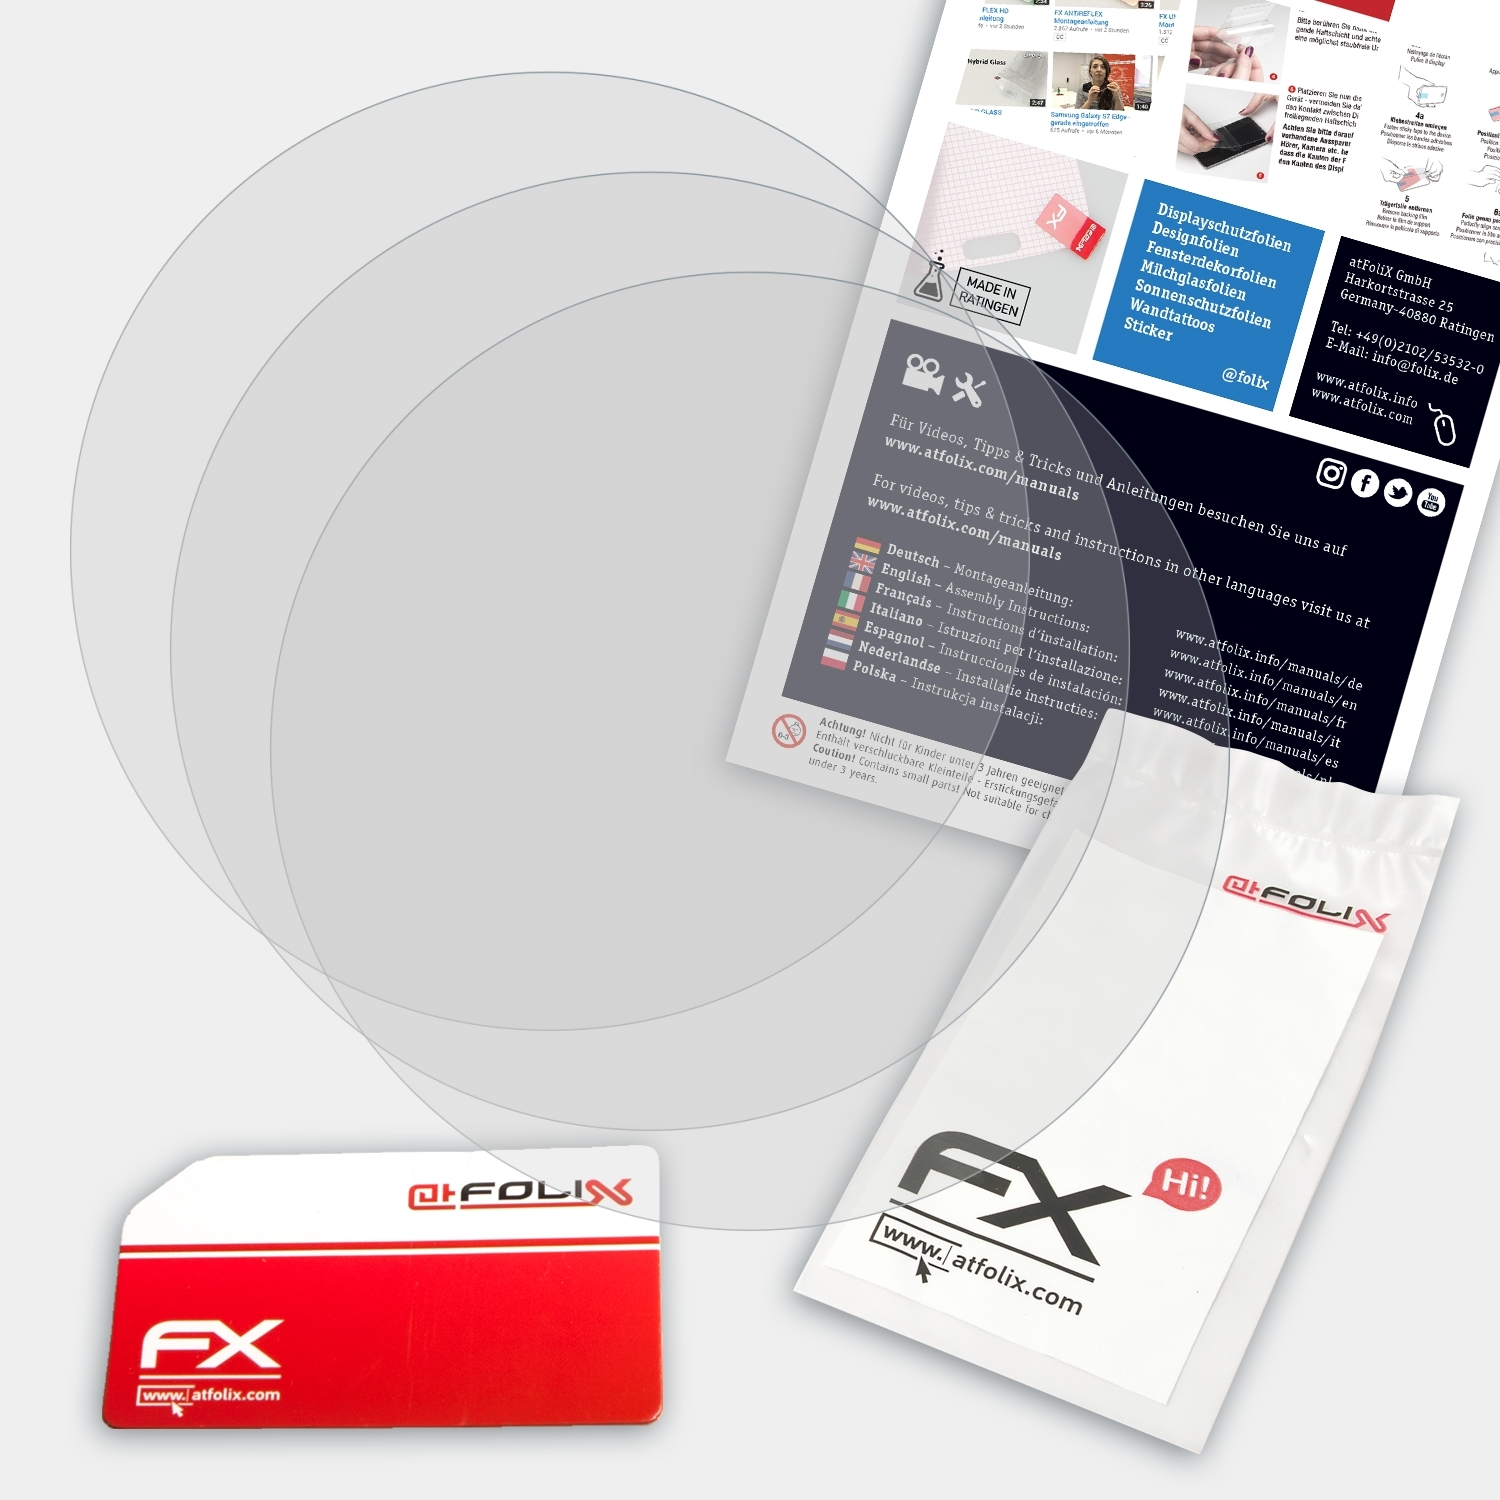 ATFOLIX 3x FX-Antireflex WSD-F30) Casio Displayschutz(für